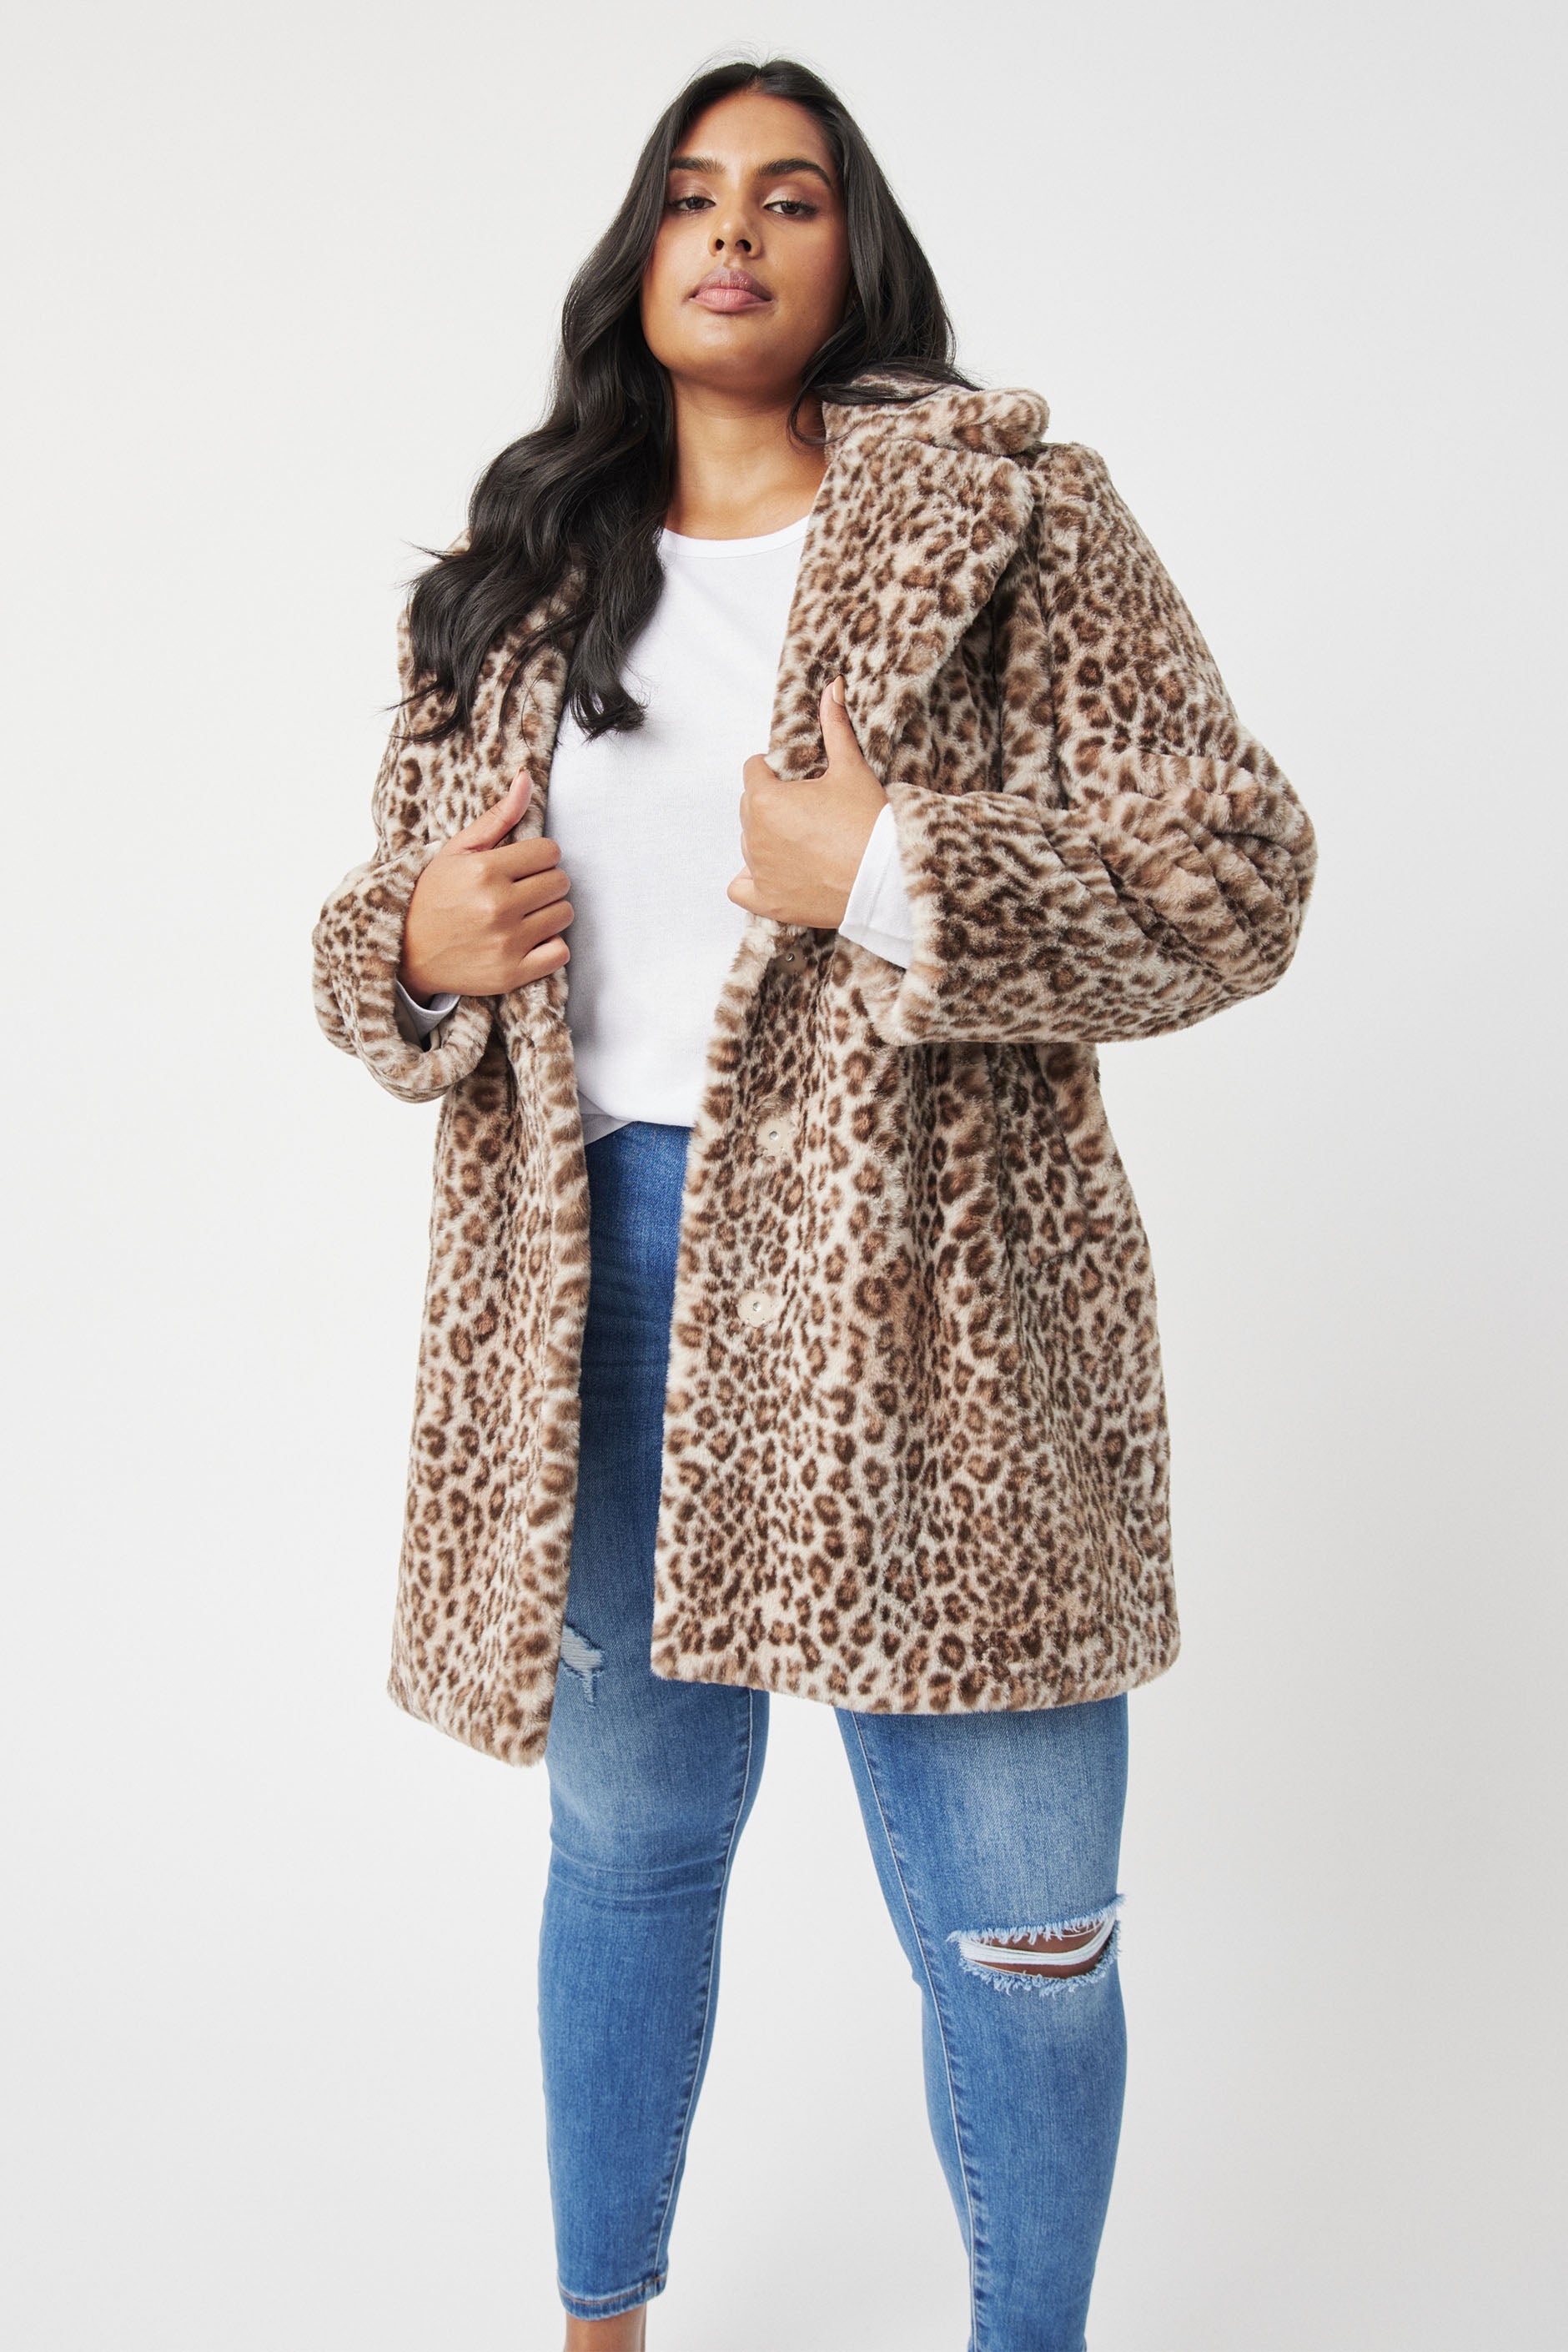 ZLSLZ Womens Ladies Winter Long Length Leopard Faux Fur Loose Luxury P  オンラインで最も安い